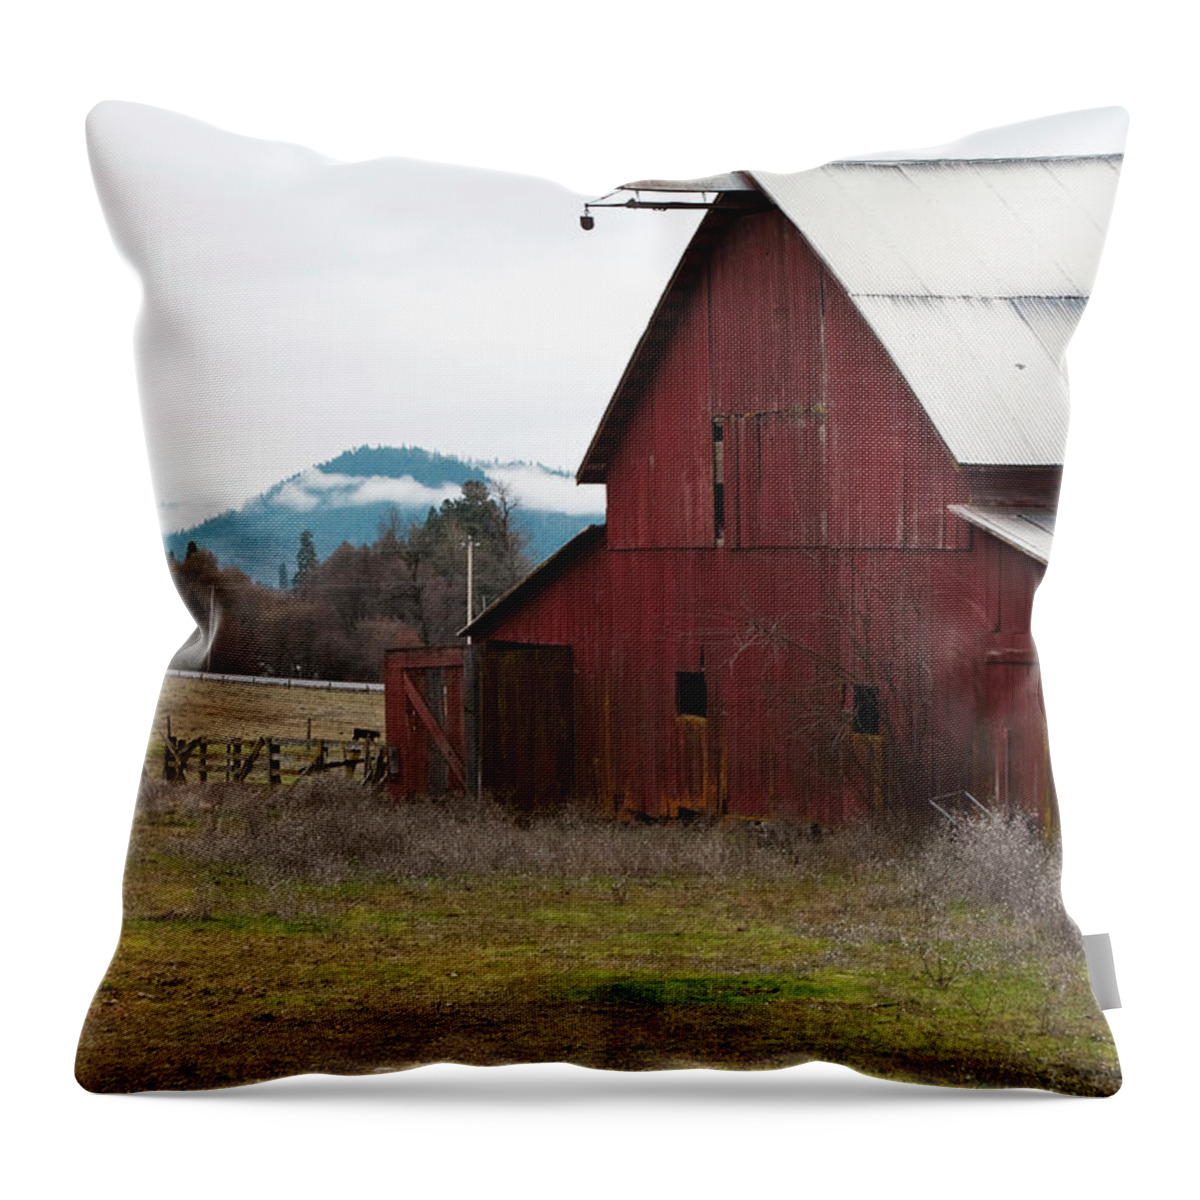 Hayfork Throw Pillow featuring the photograph Hayfork Red Barn by Lorraine Devon Wilke